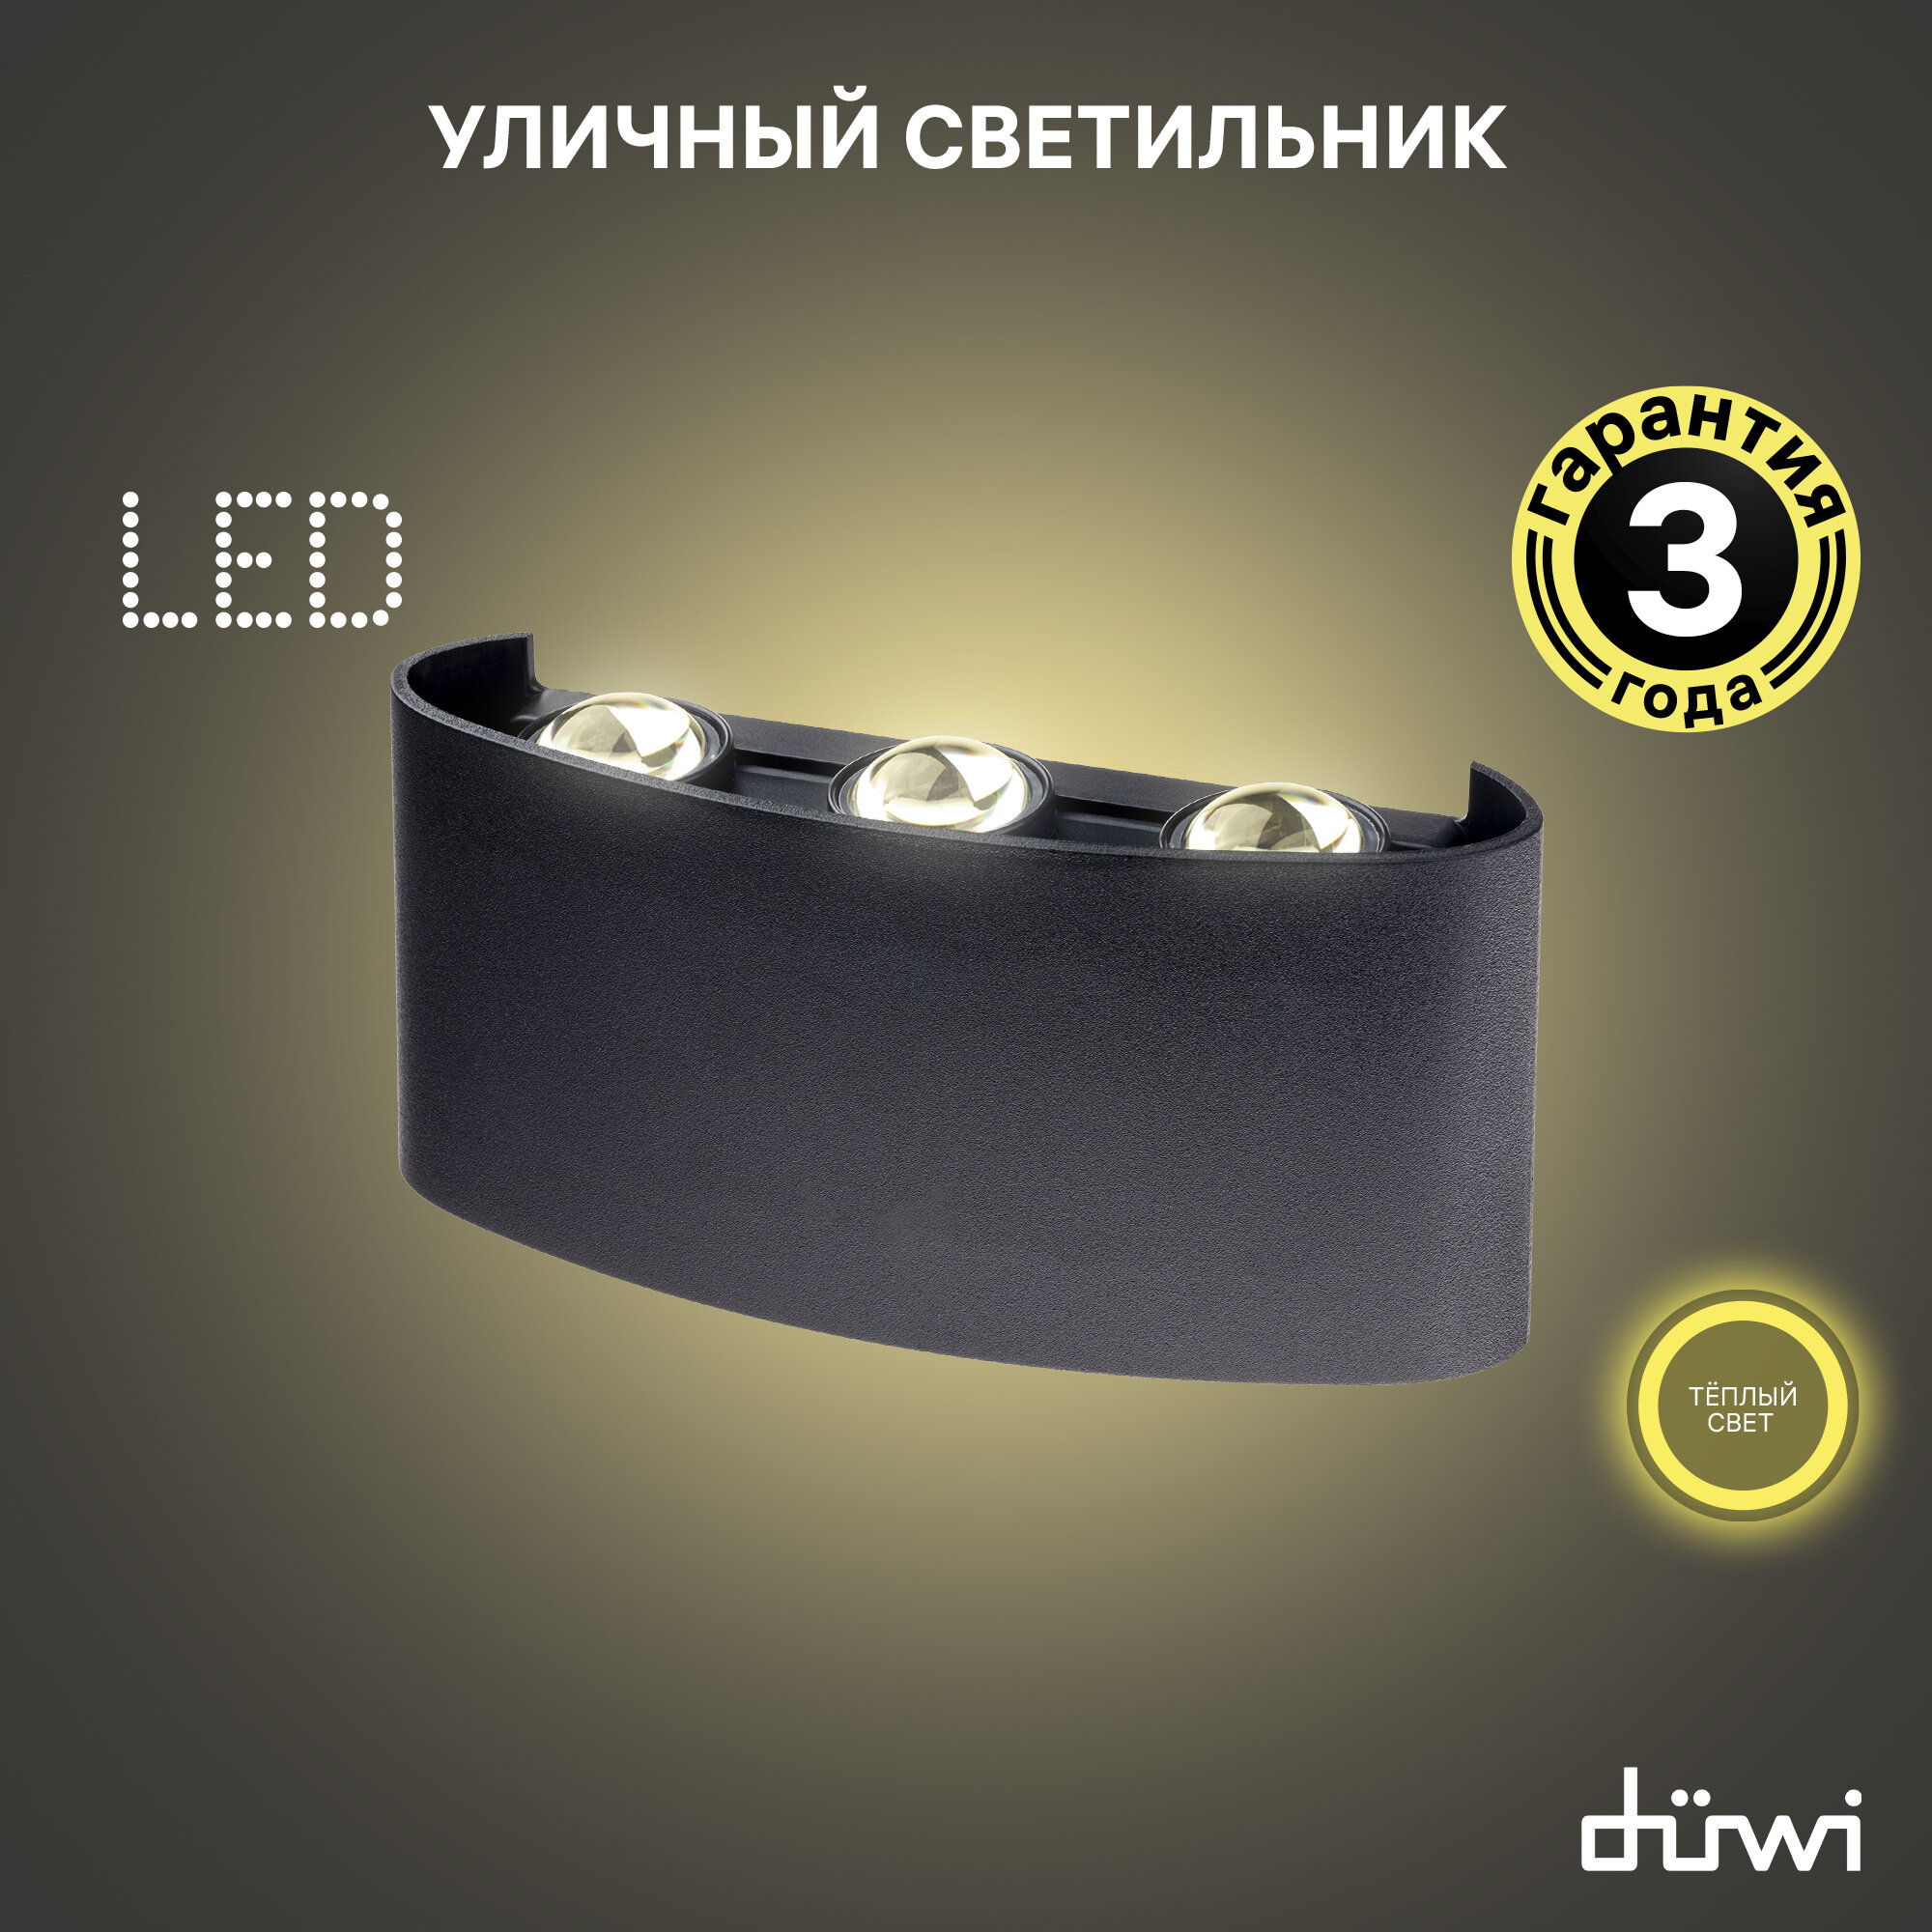 Светильник светодиодный накладной duwi NUOVO LED, 6Вт, 3000К, 420Лм, IP54, пластик, черный, 24771 9